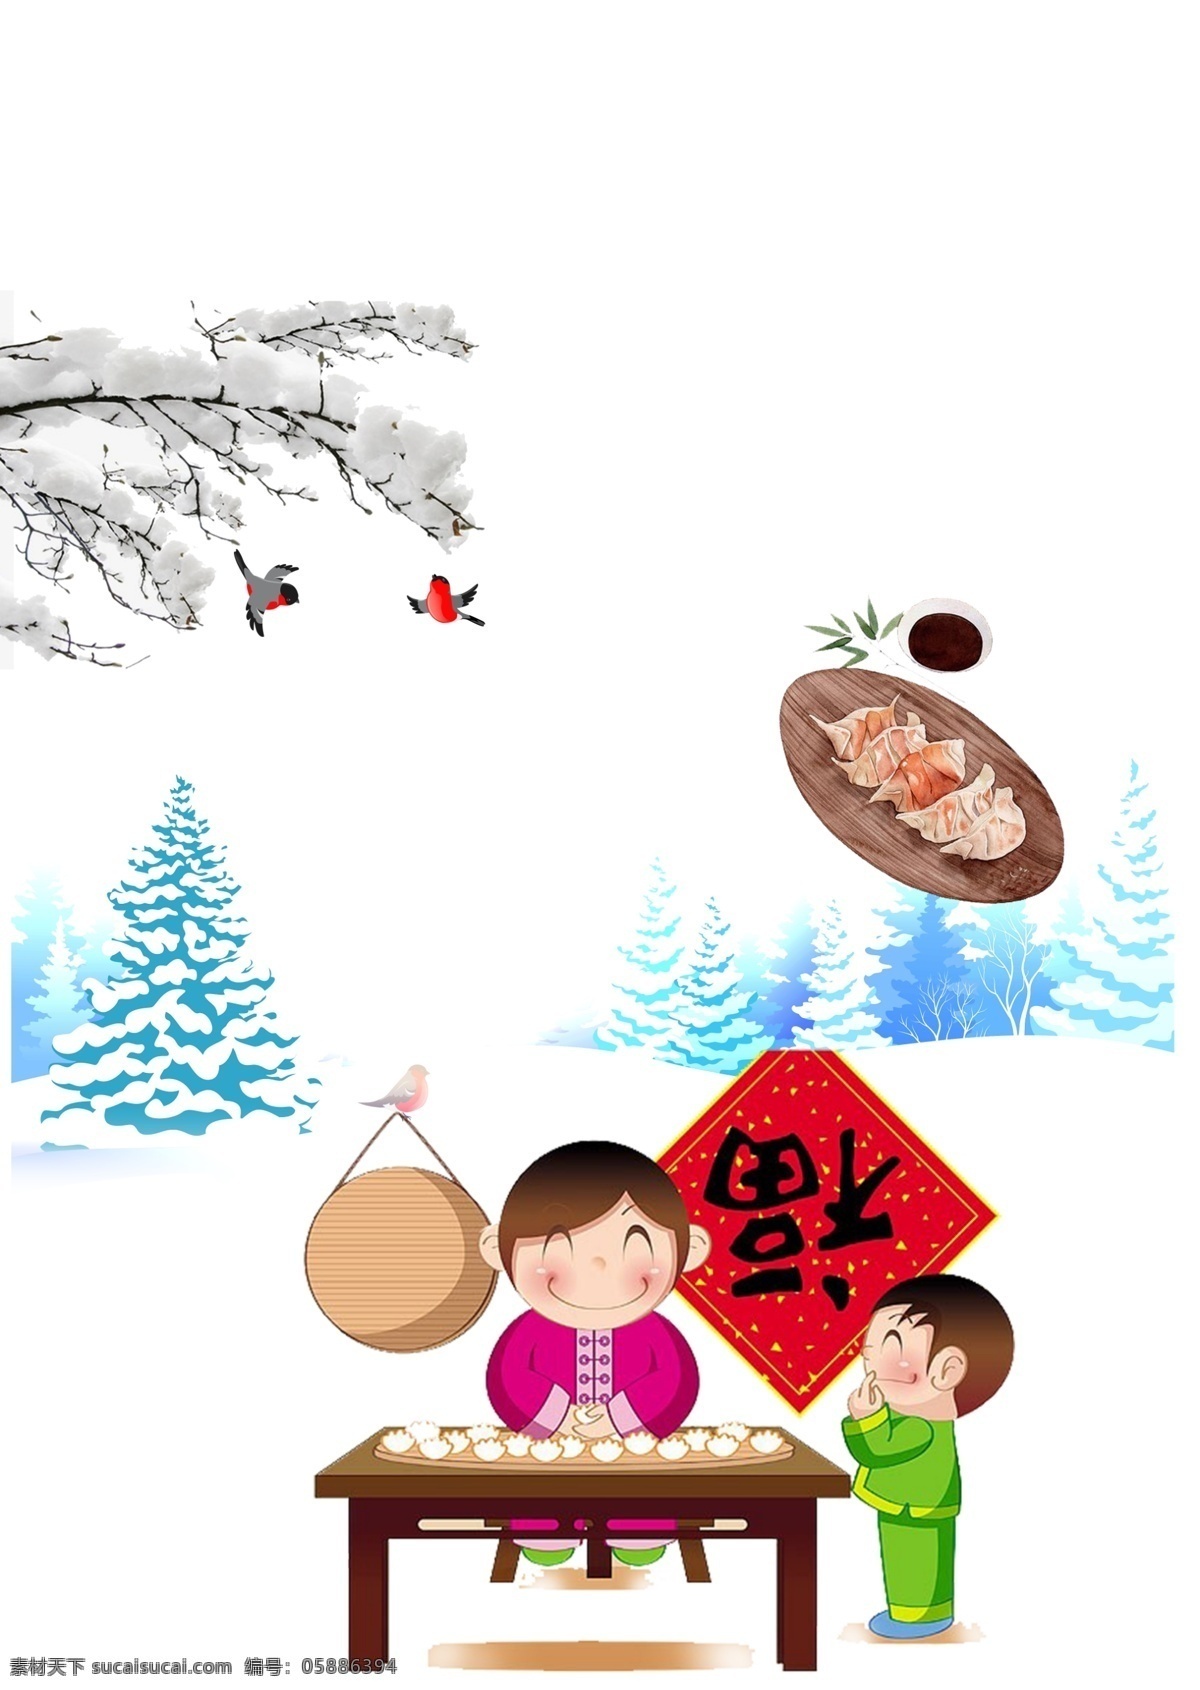 包 水饺 卡通 人物 图 冬至 包水饺 人物图 福到了 love 分层